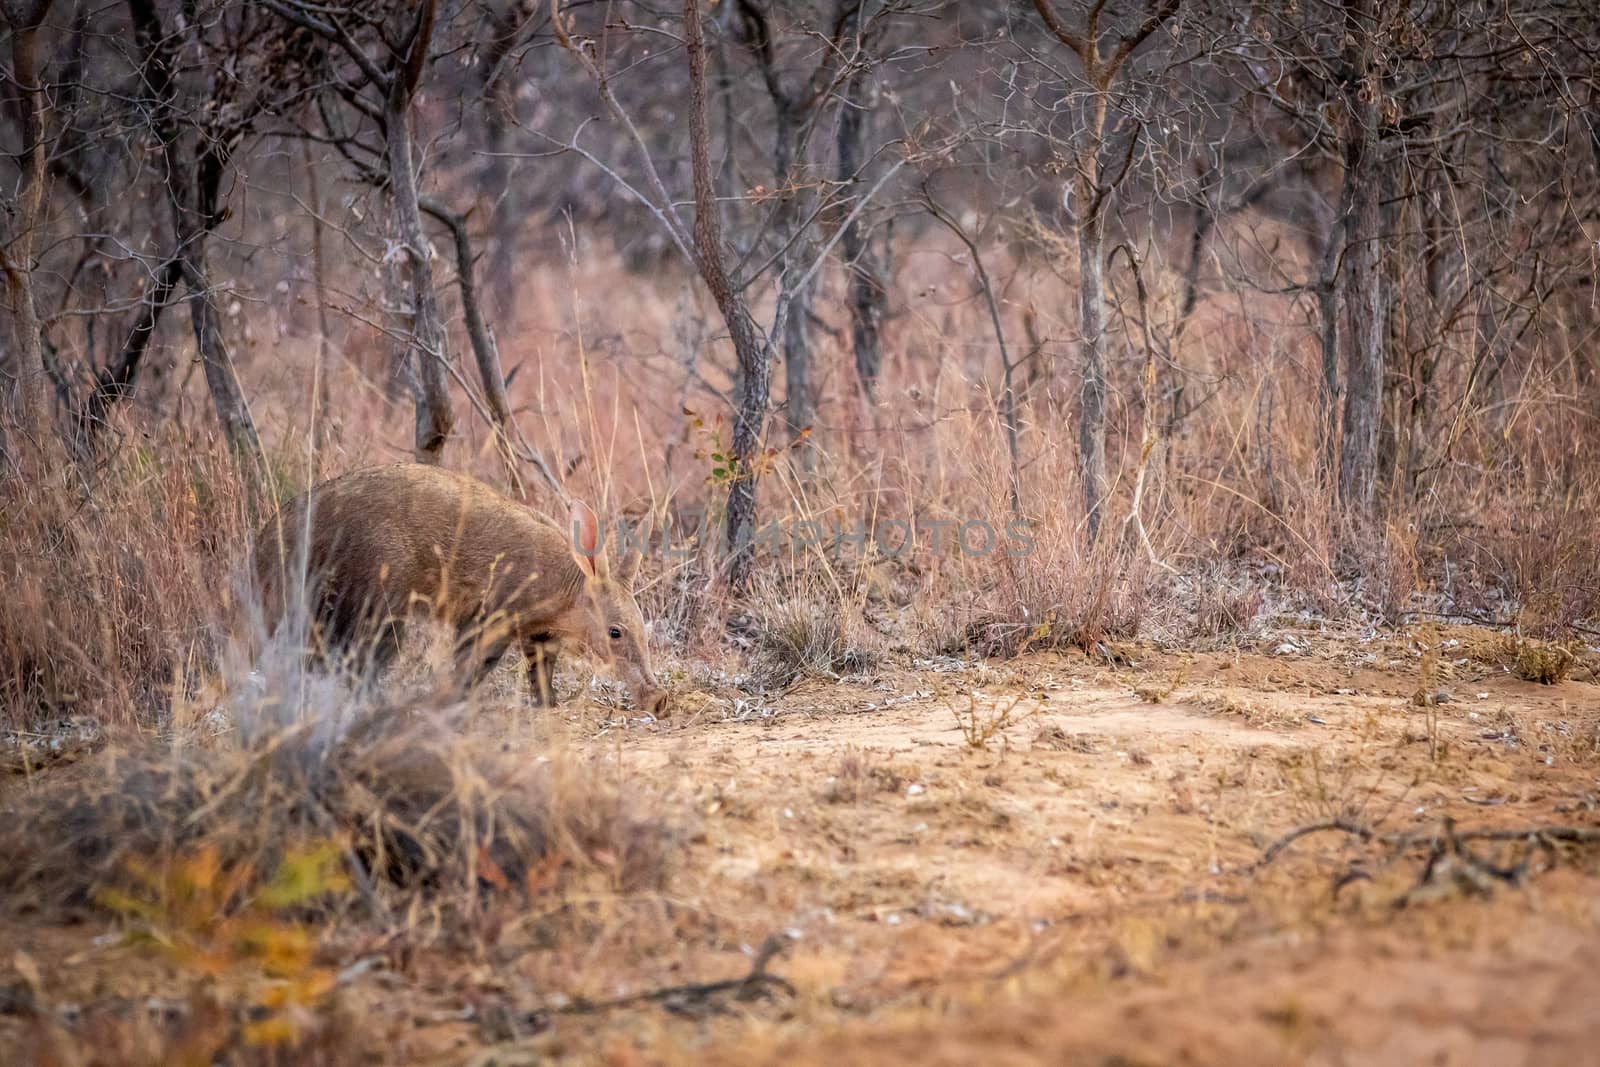 Aardvark walking in the African bush. by Simoneemanphotography